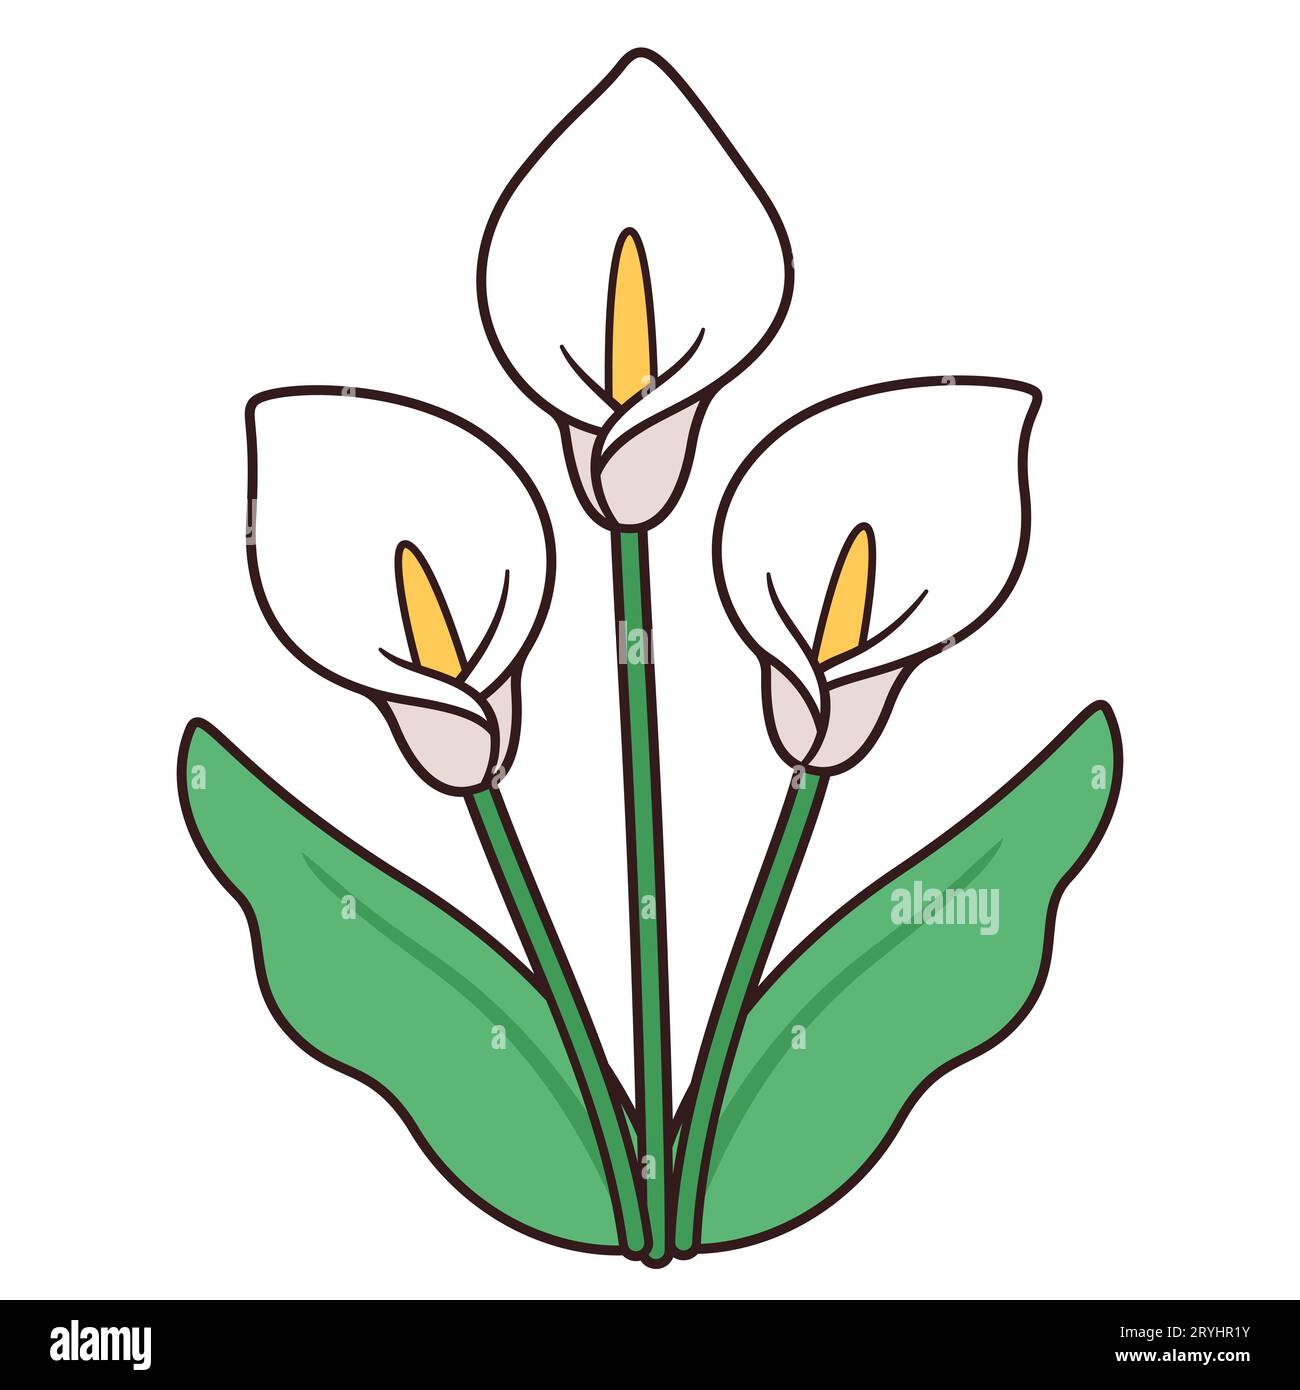 Calla Lily Blumenstrauß Zeichnung, einfaches und elegantes Design. Drei weiße Lilien mit Blättern, isolierte Vektorillustration. Stock Vektor